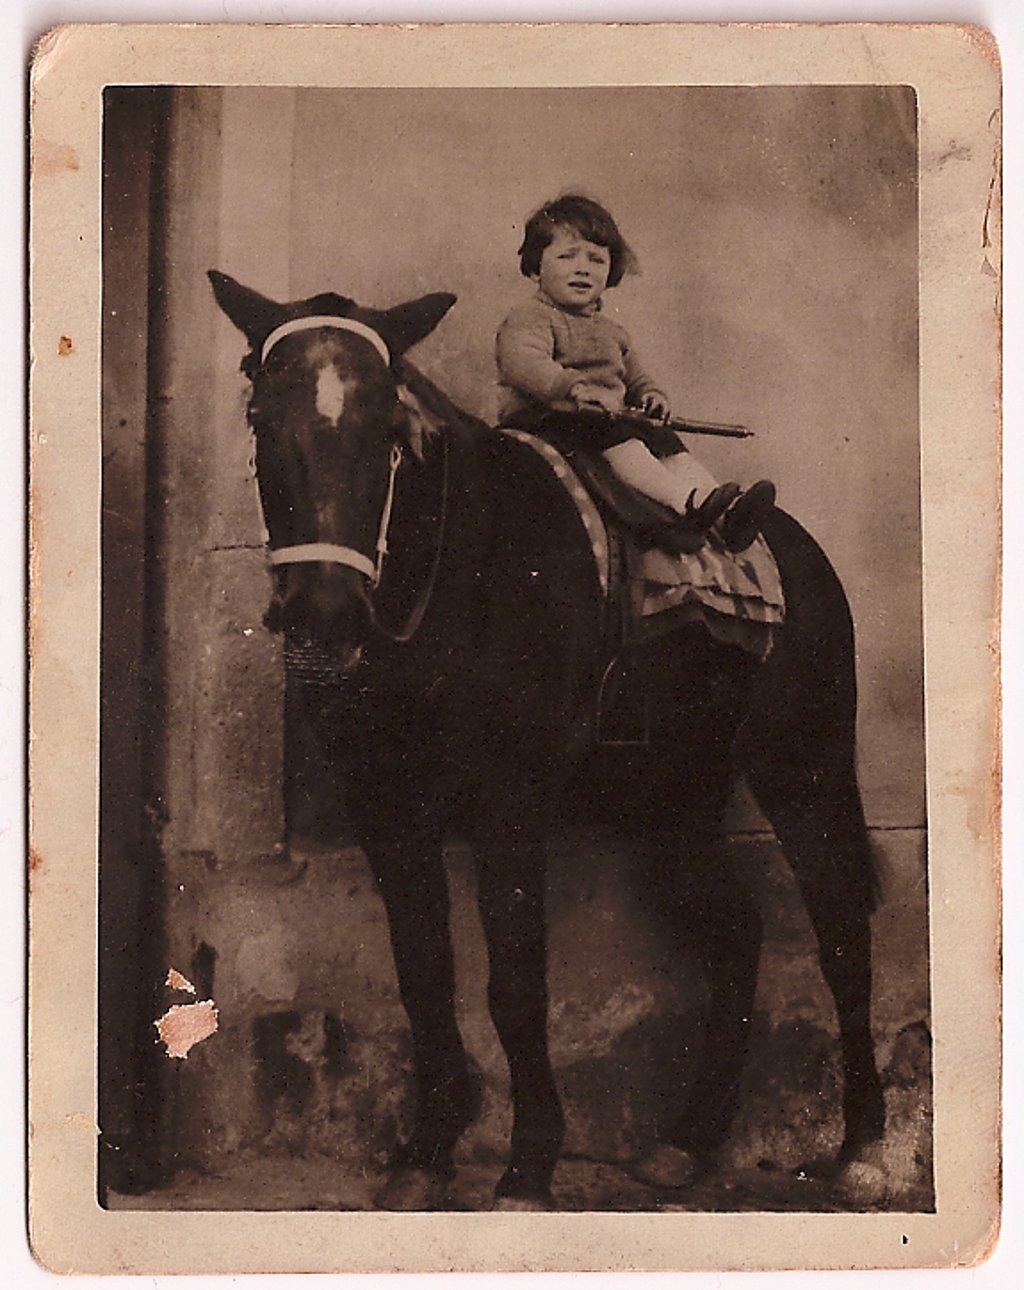 Ein kleines Mädchen sitzt auf dem Rücken von einem Pferd - Schwarz-Weiß Fotografie